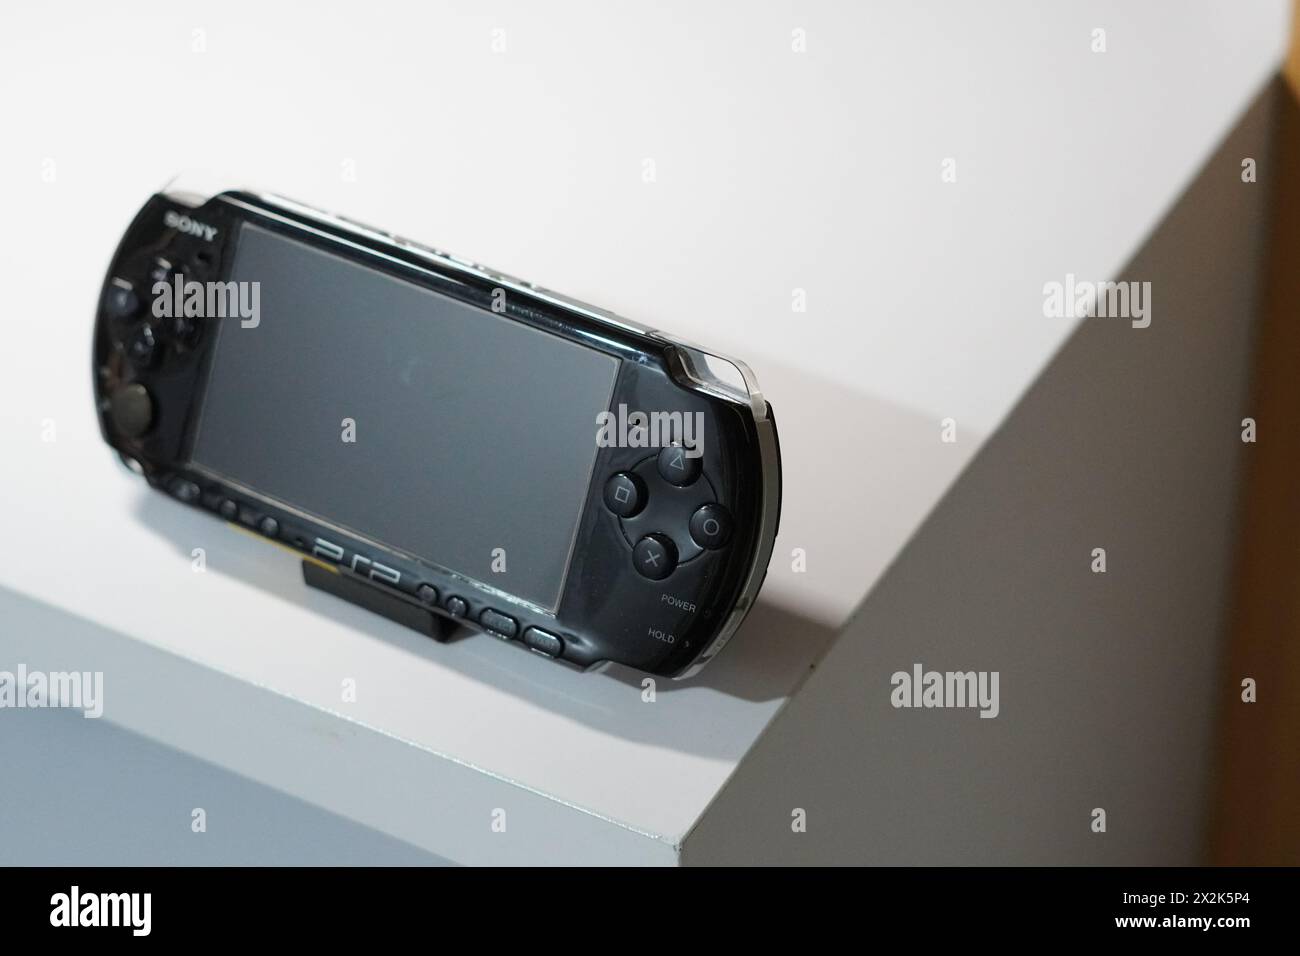 Eine schwarze Handheld-Spielkonsole von Sony namens PSP auf einem weißen Tisch Stockfoto